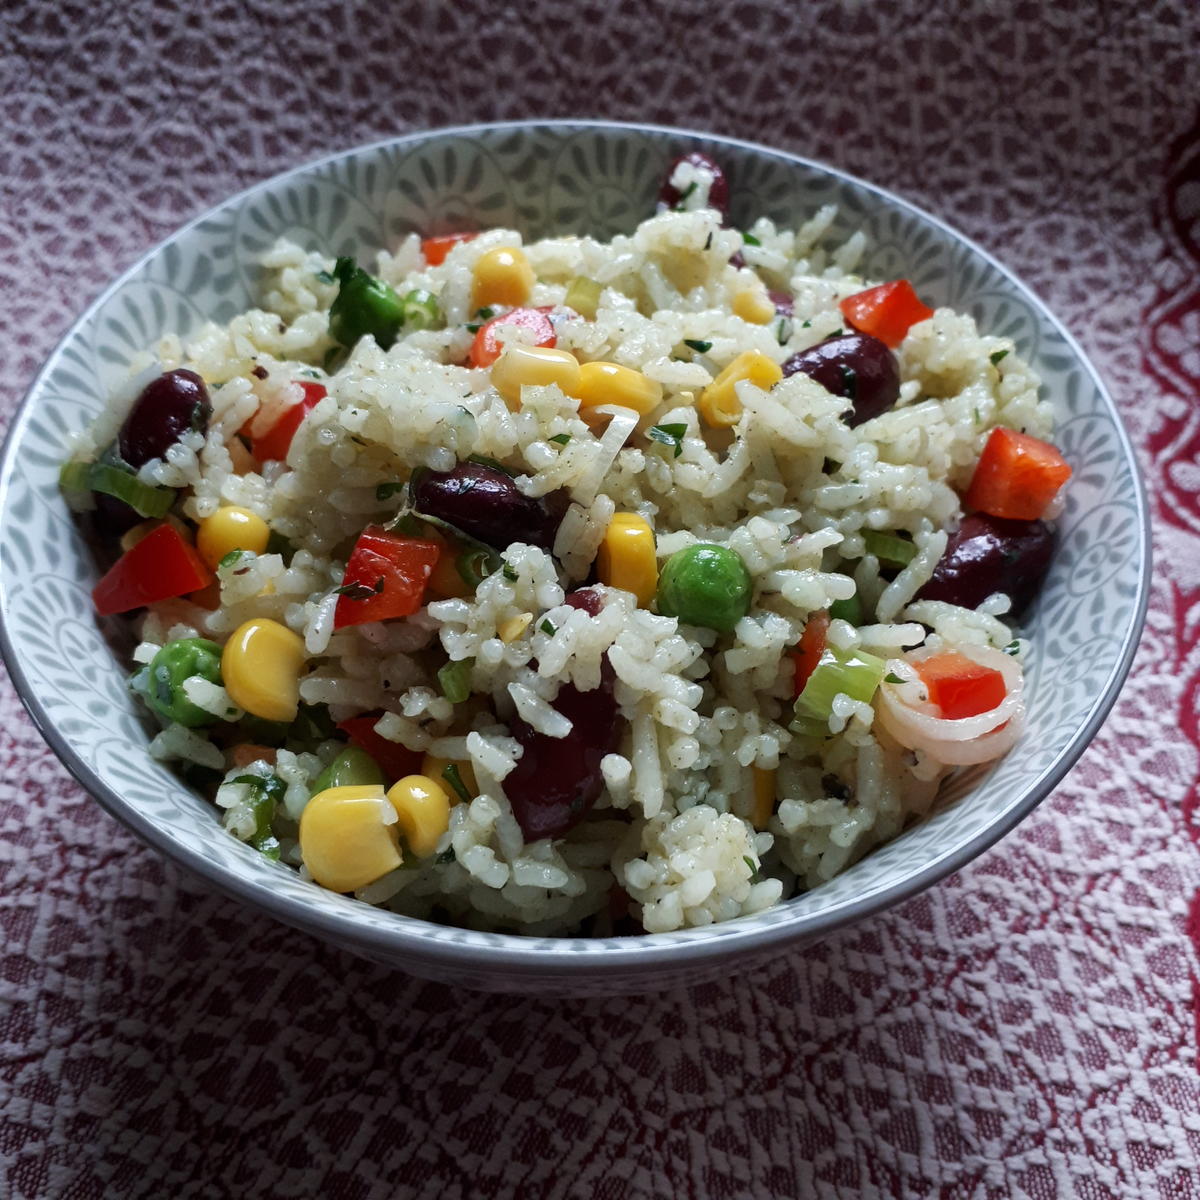 Reissalat - einfach, schnell und ohne Mayonnaise - Rezept - Bild Nr. 2